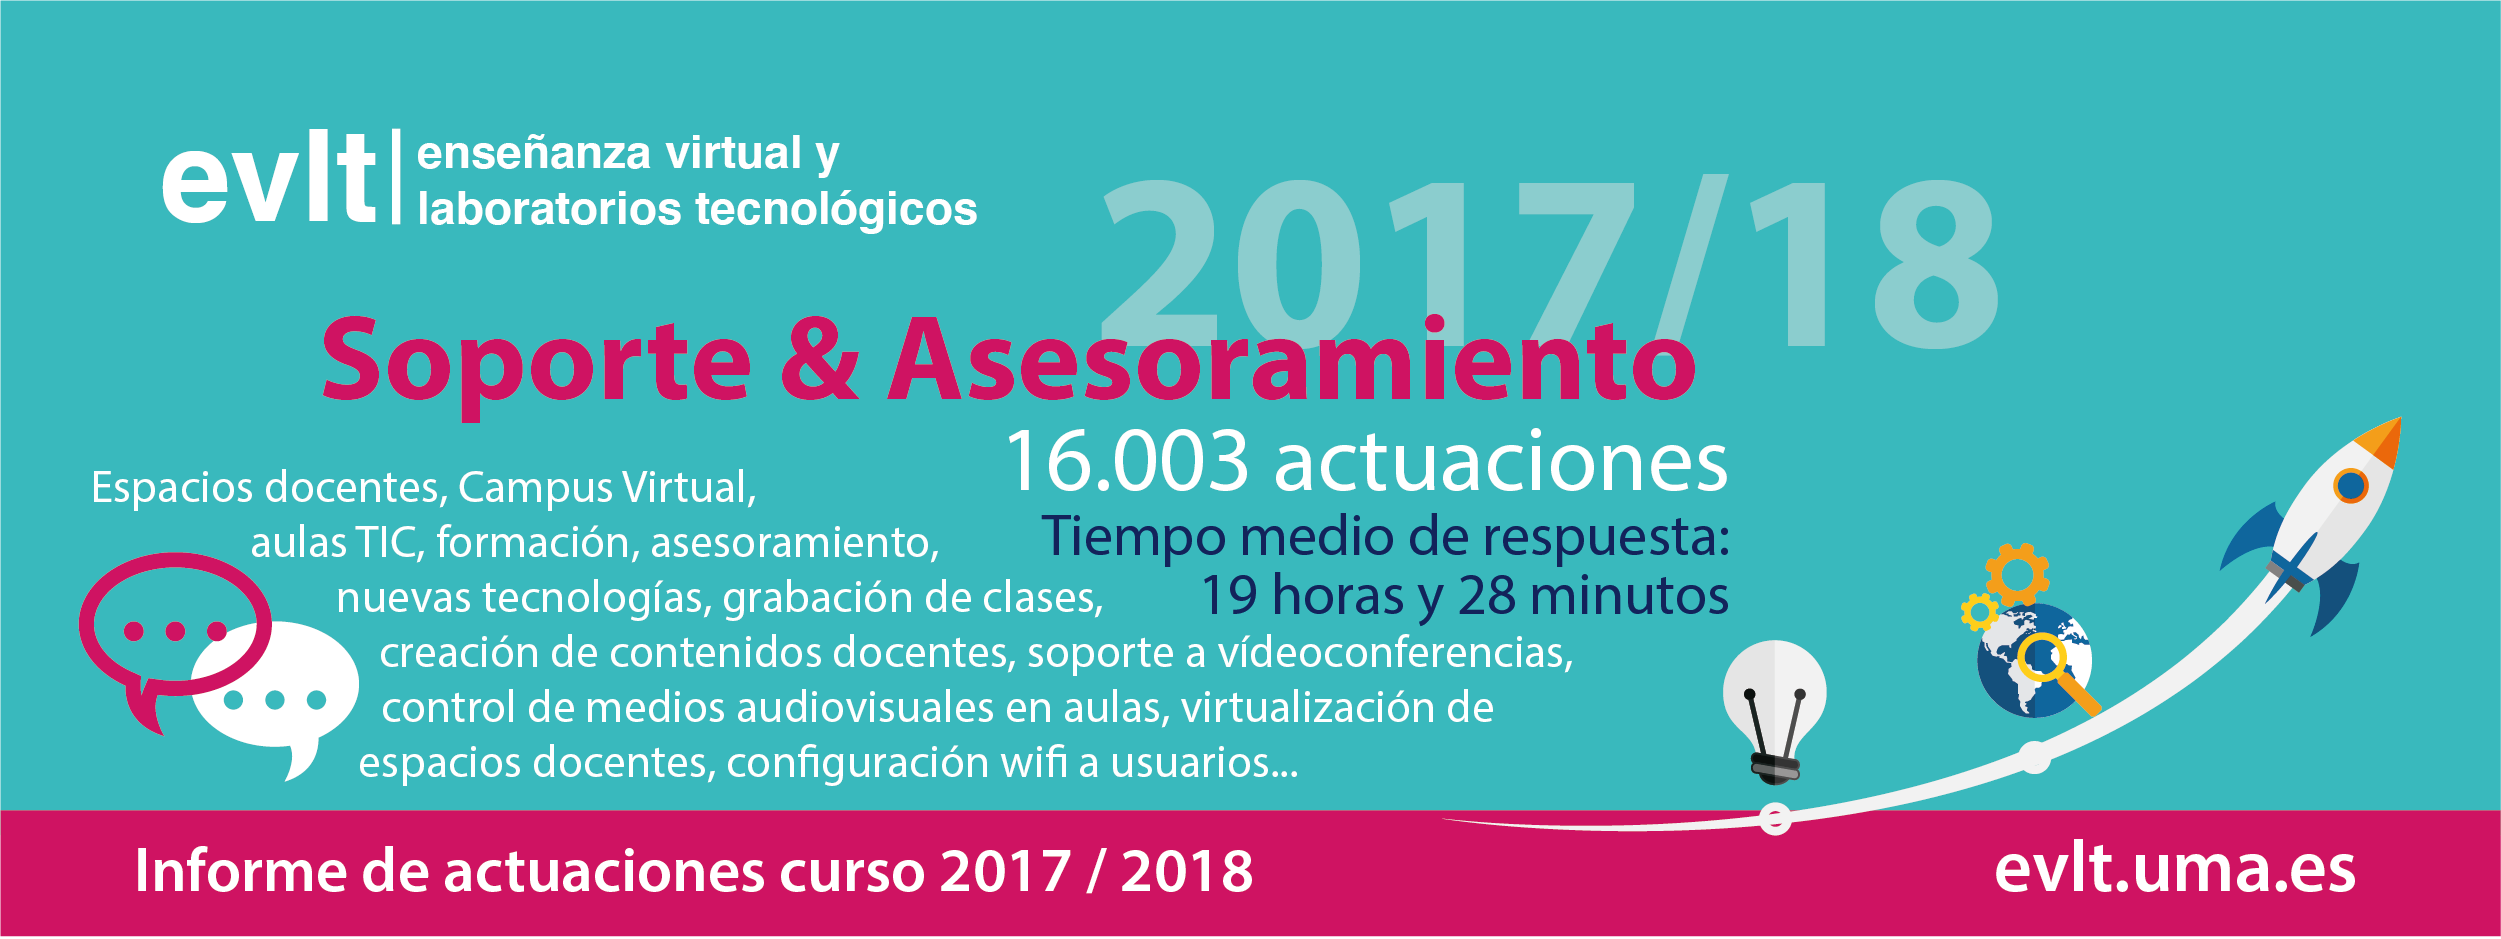 Actuaciones curso 2017 / 2018